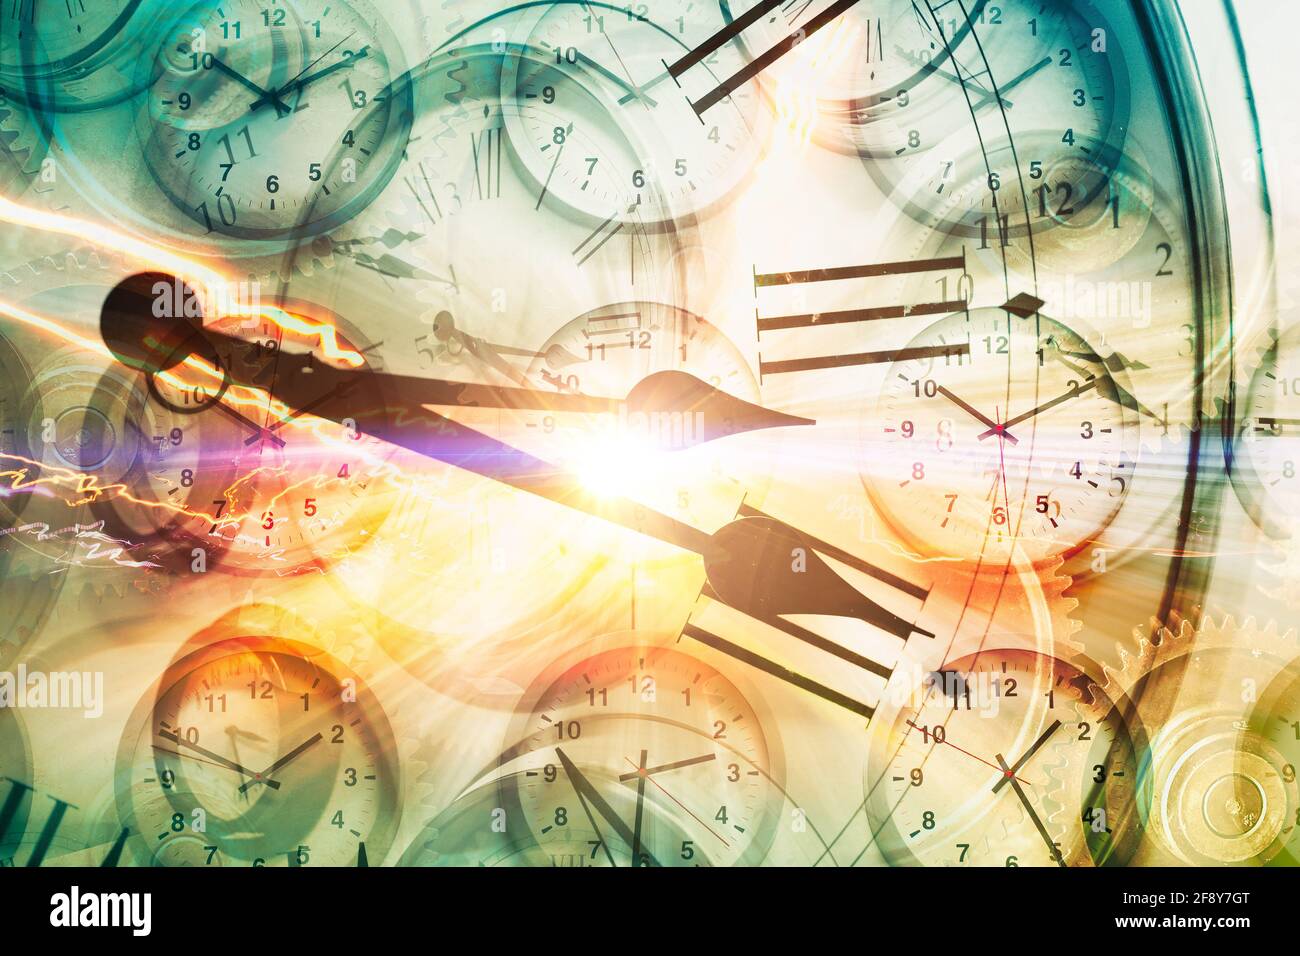 Concetto di Time Travel o Time Machine, gli orologi Time si sovrappongono a Light Trail car drive ad alta velocità per iper space veloce tempo di avanzamento Foto Stock